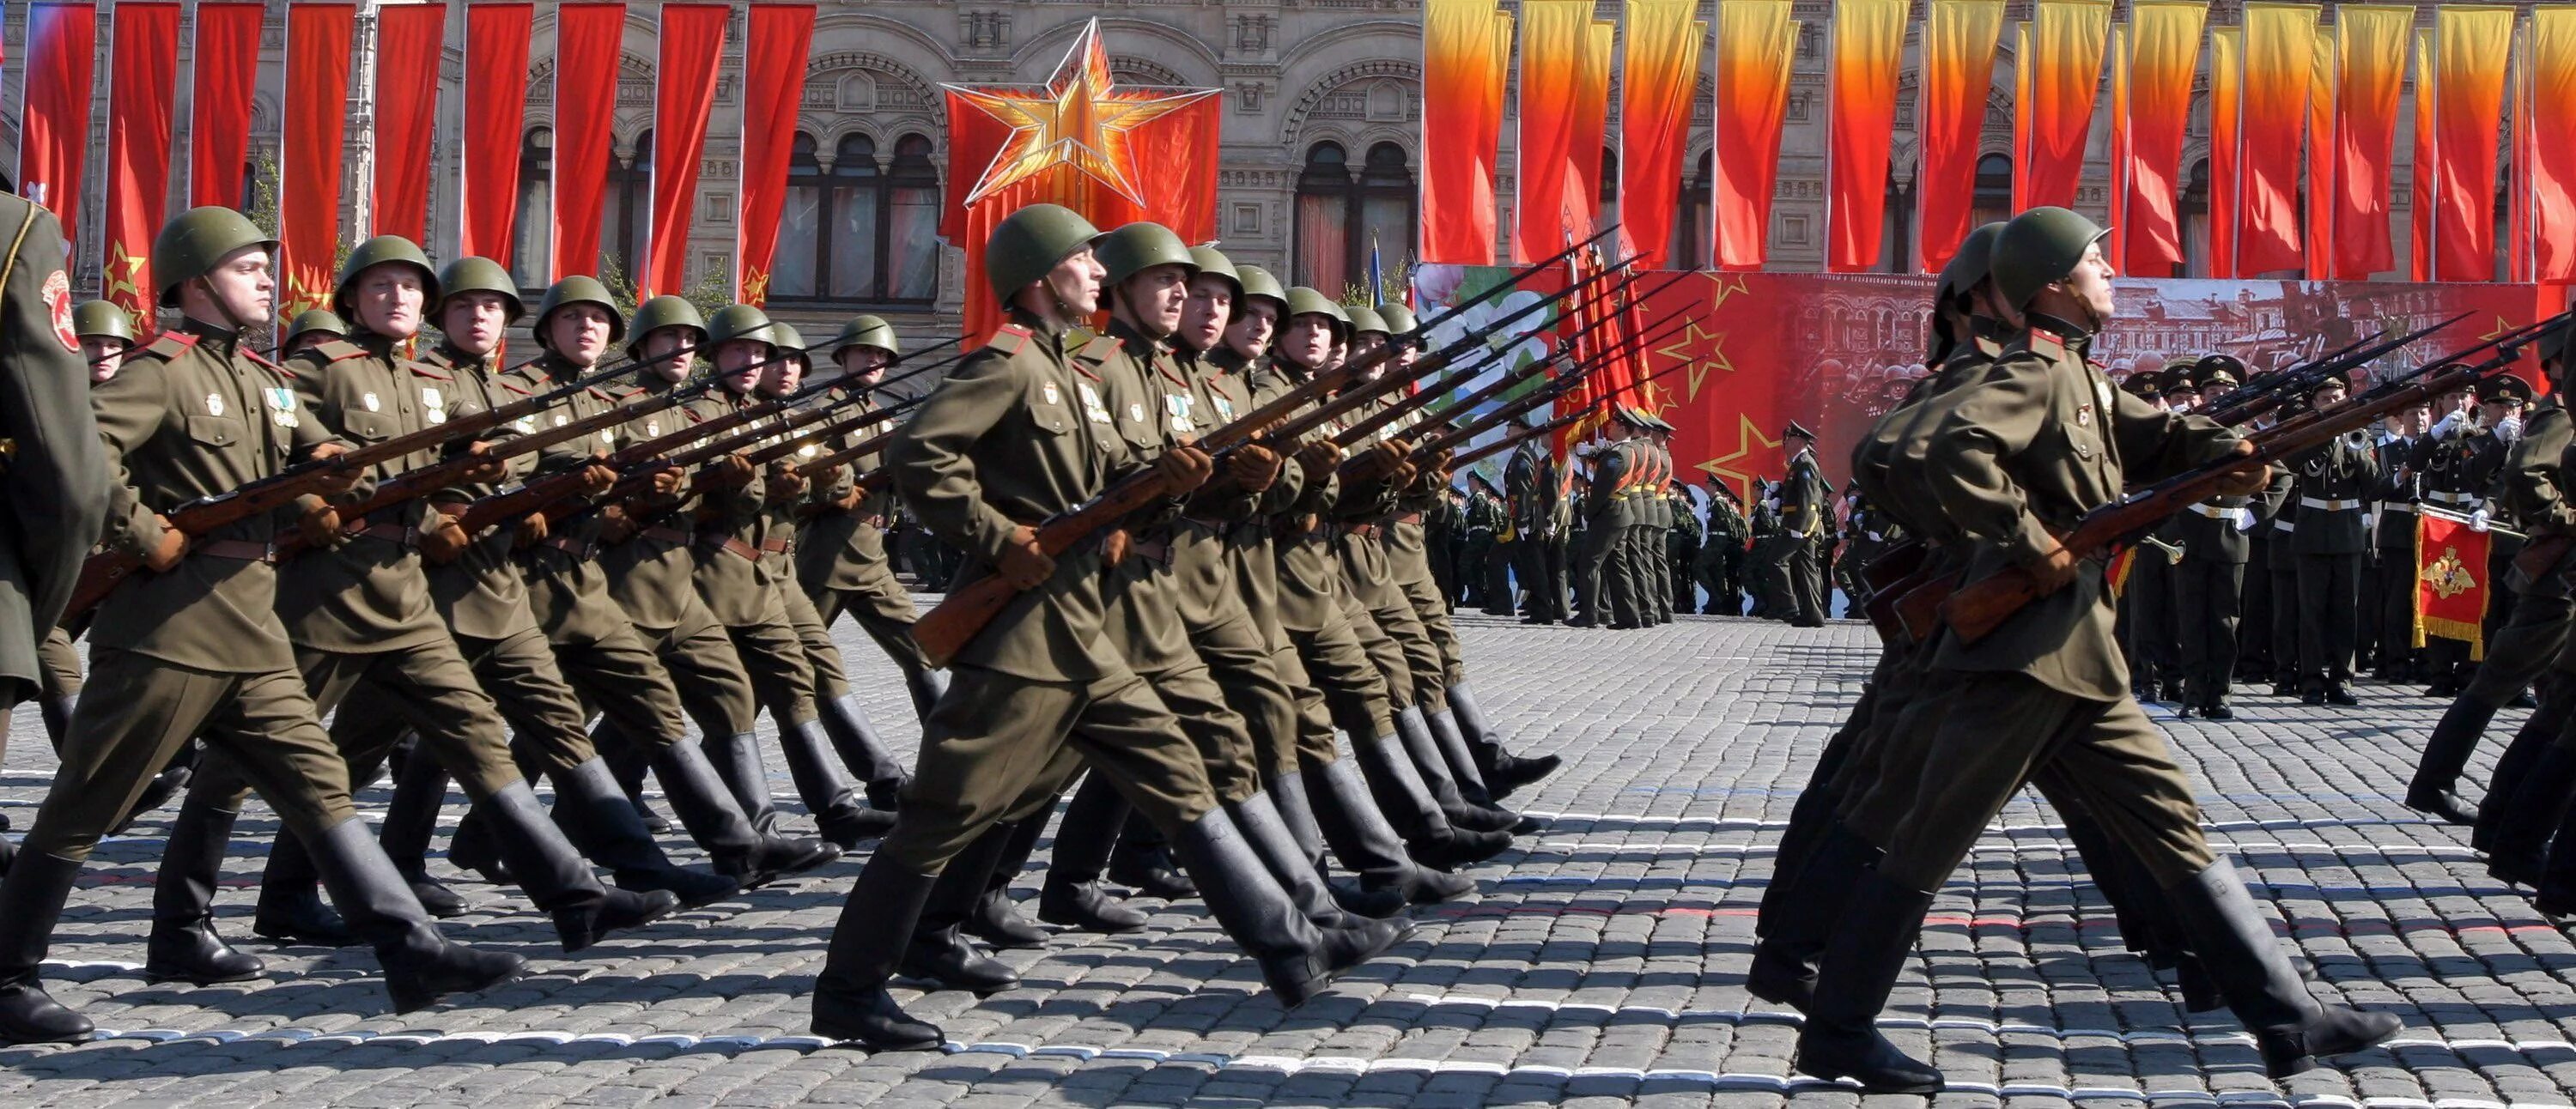 9 мая день победы солдаты. Марширующие солдаты на красной площади 9 мая. Парад на красной площади 9 мая 1945. Солдаты парад Победы 1945. Российский солдат на параде.